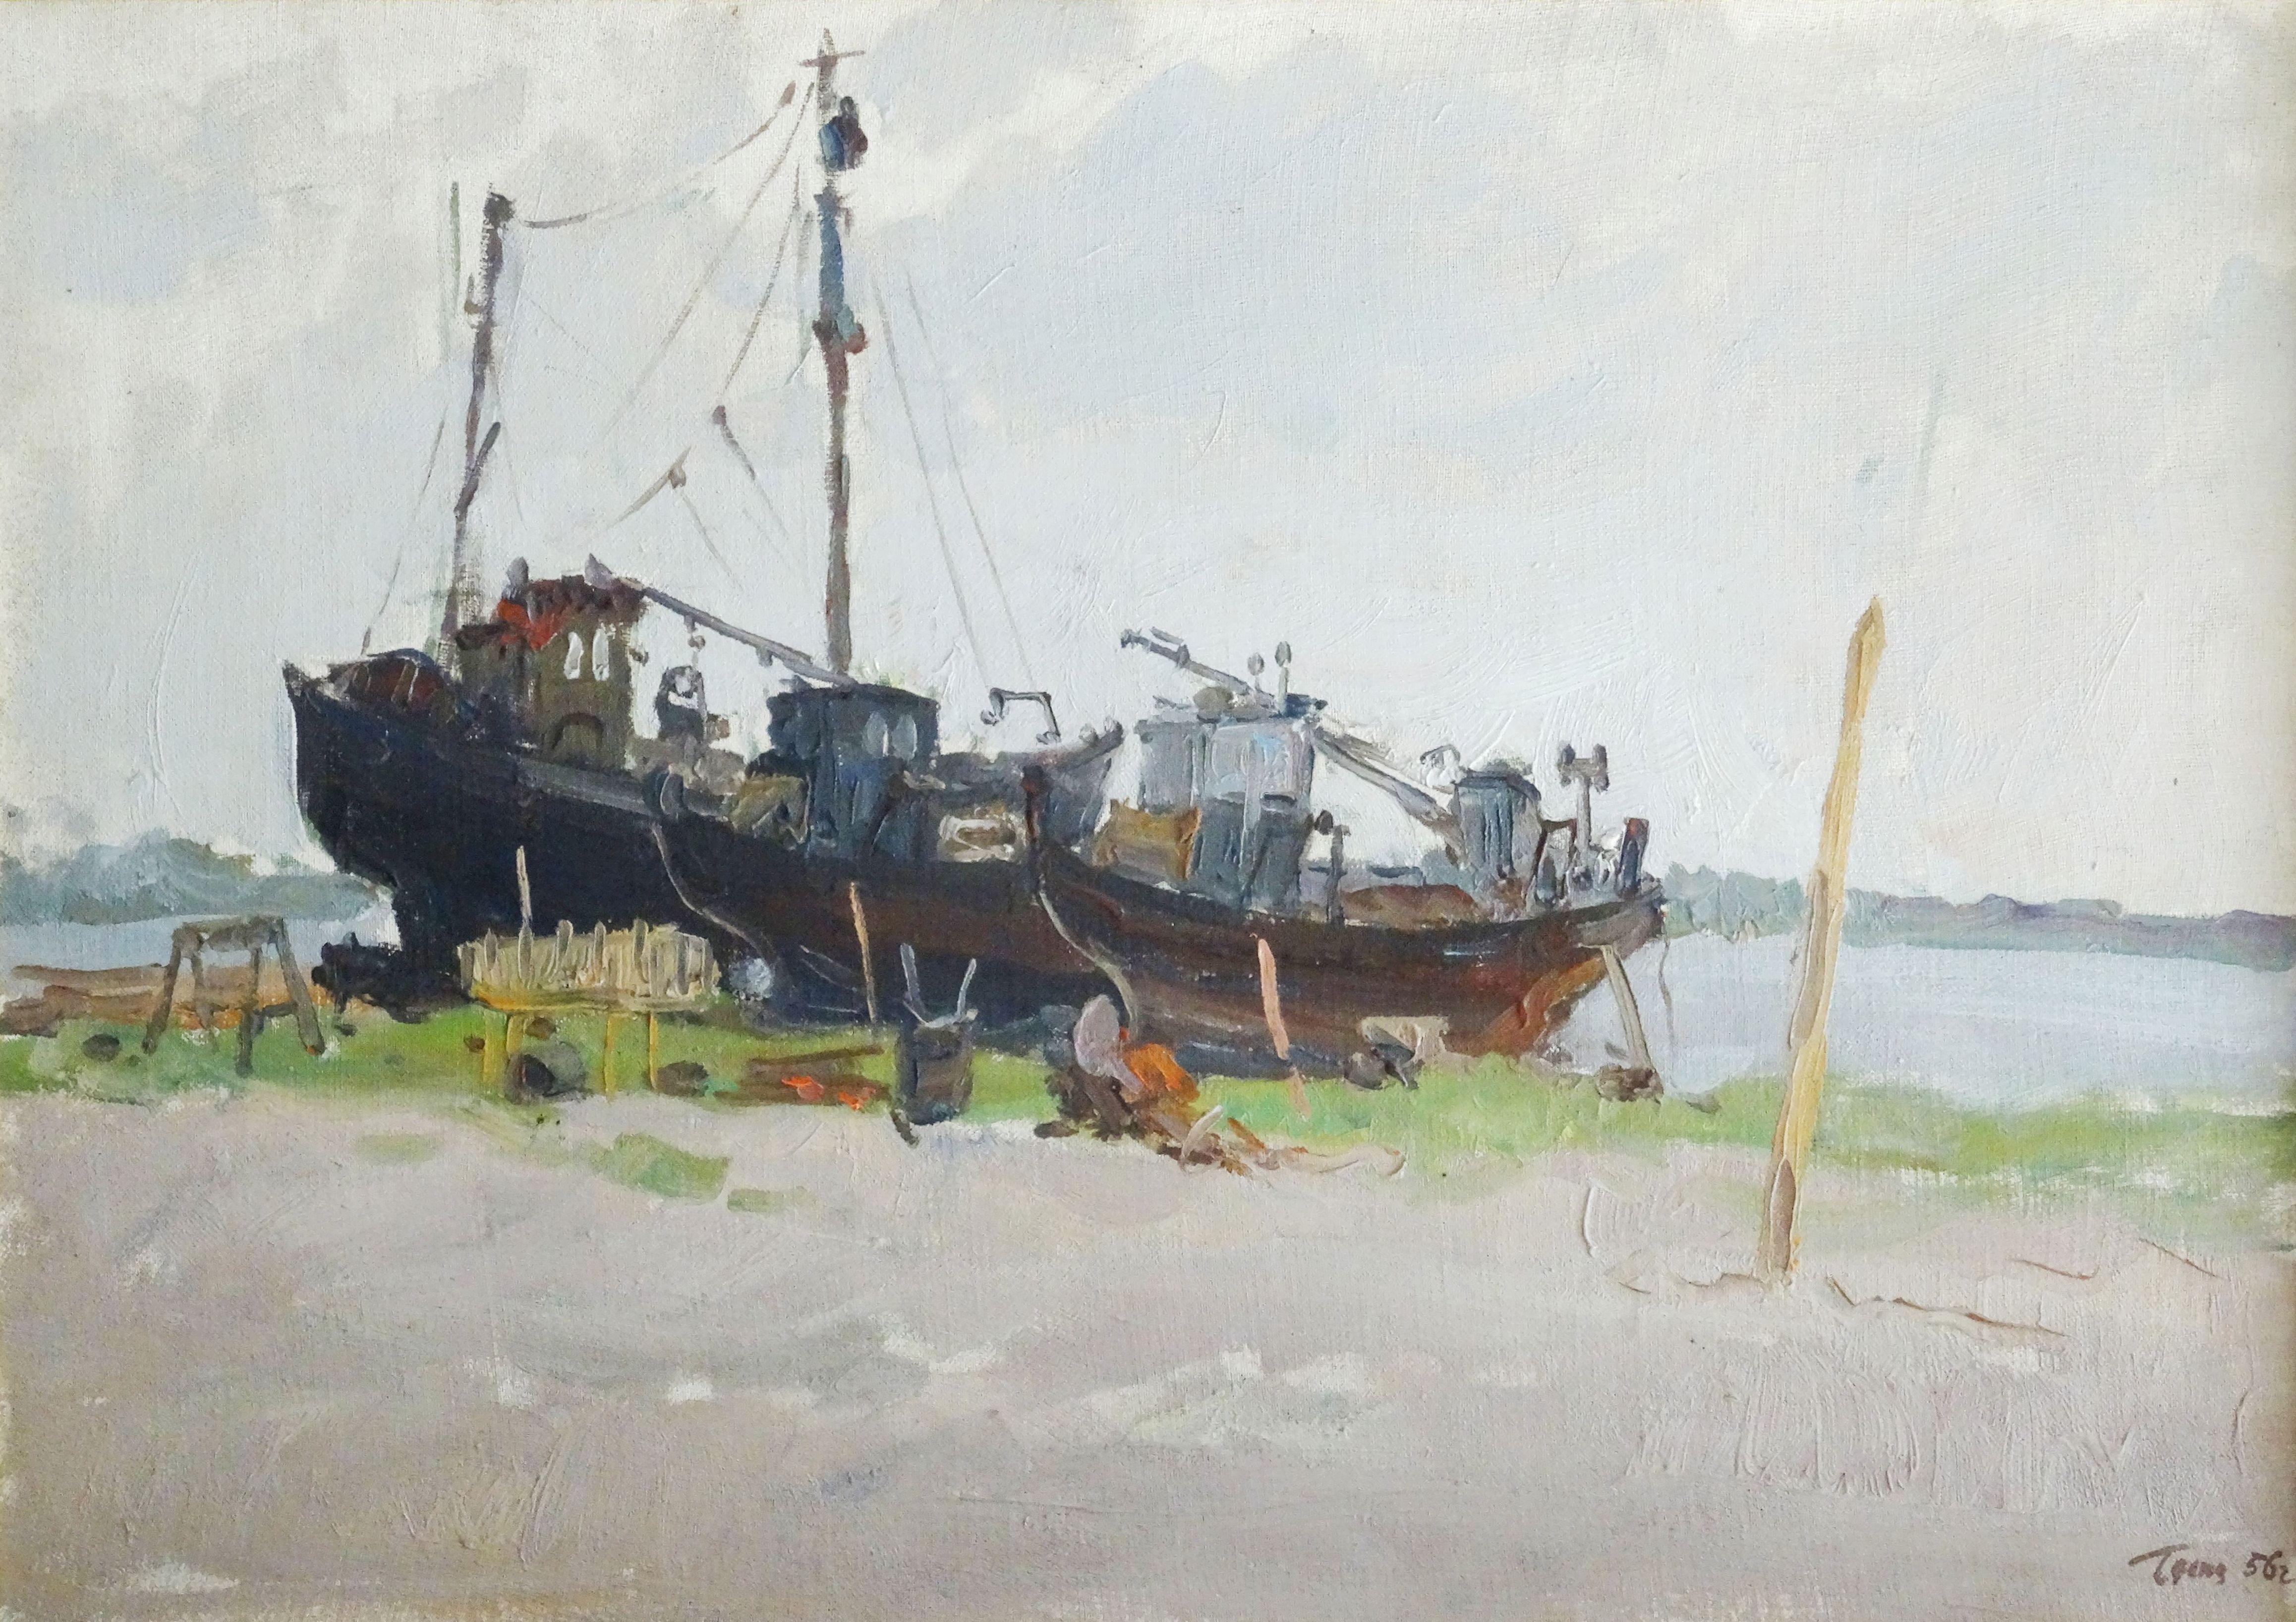 Landscape Painting German Dontsov - Réparation du navire. 1956, huile sur toile, carton, 43,5 x 61,5 cm